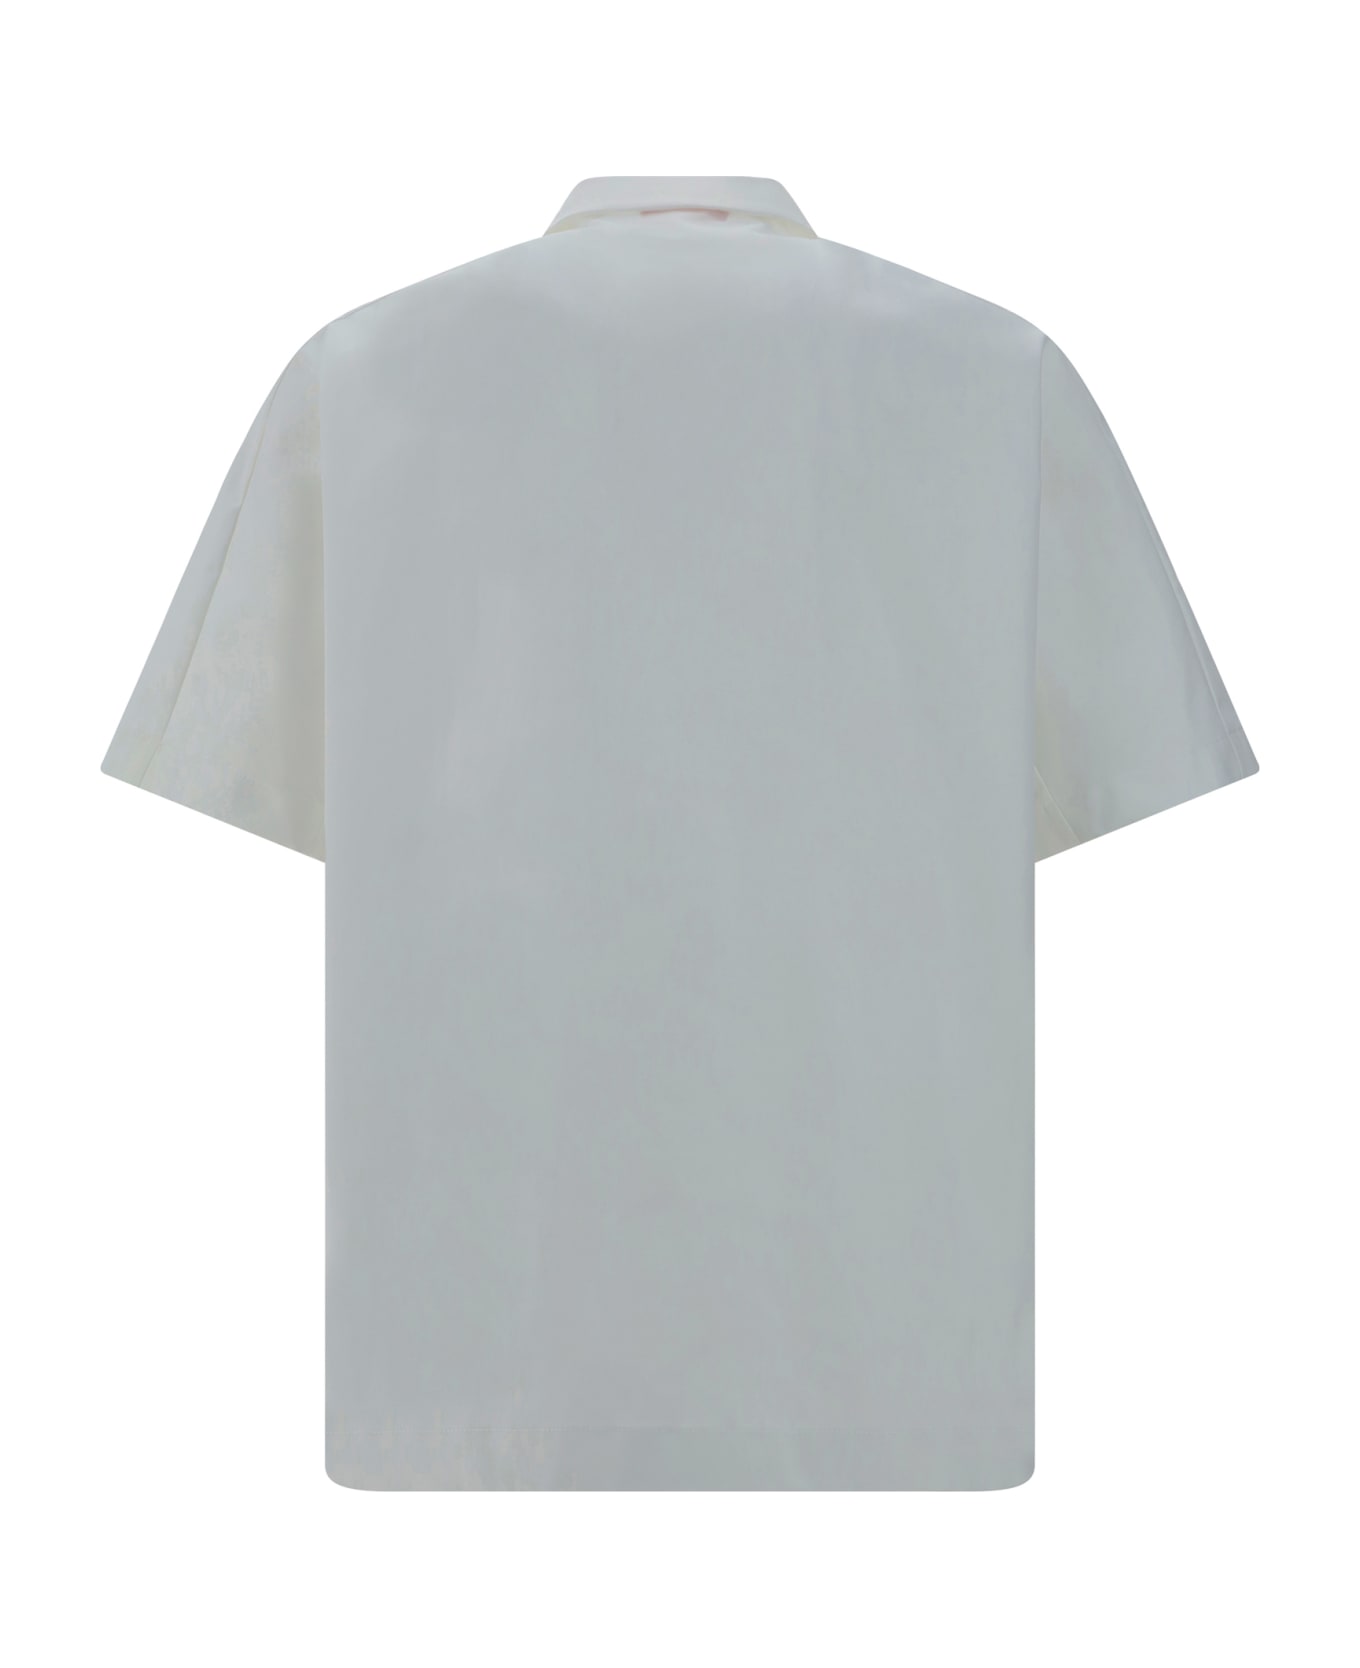 Valentino Shirt - Bianco